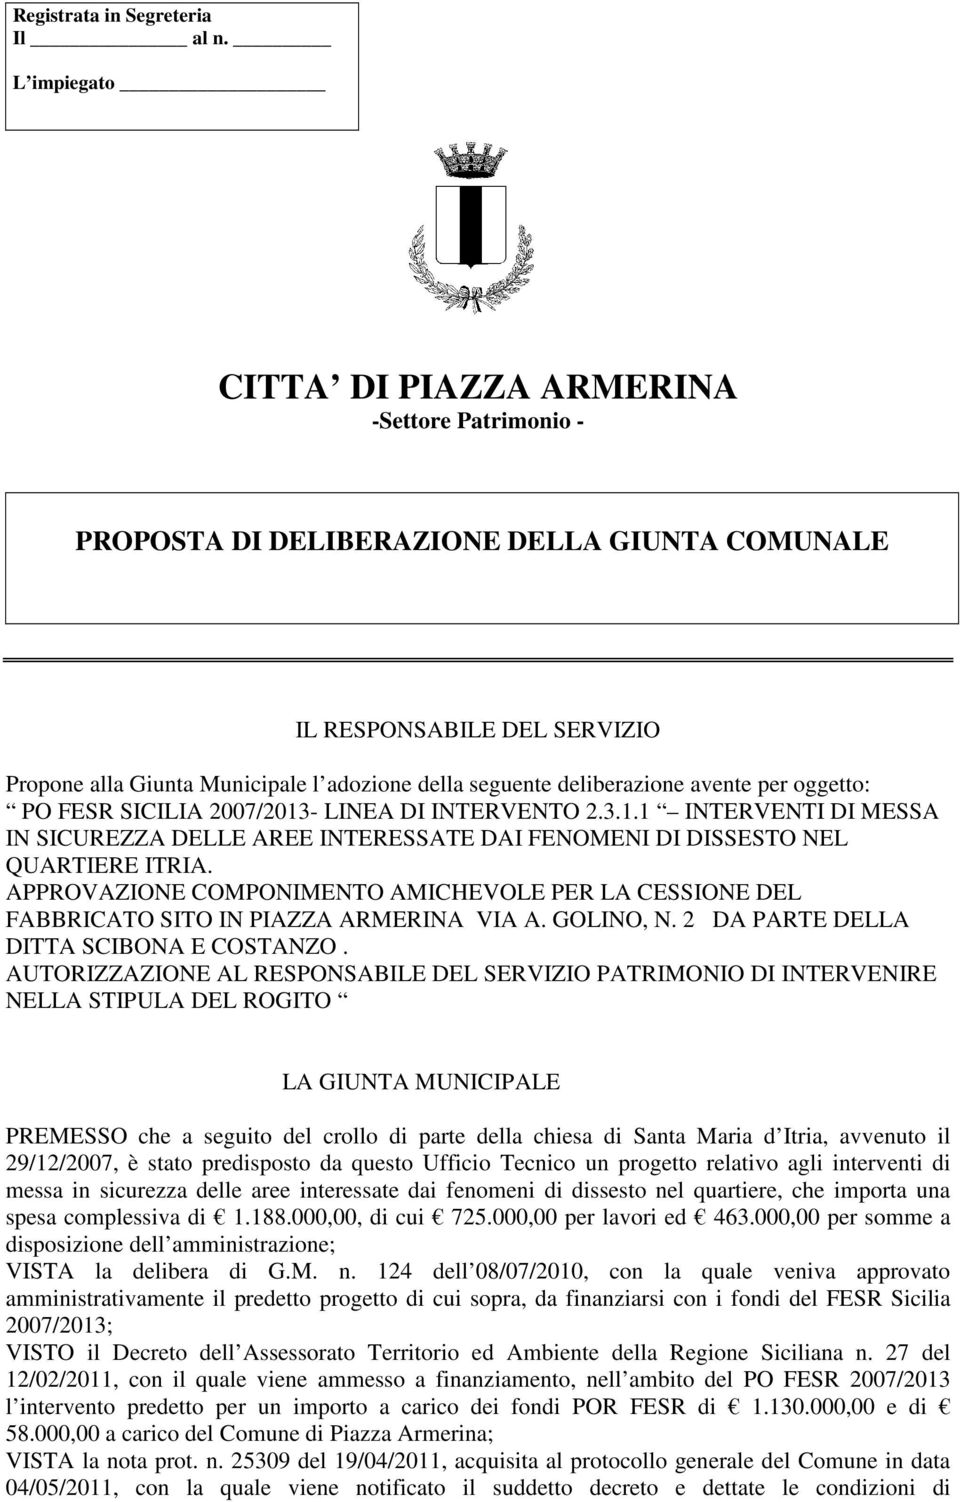 deliberazione avente per oggetto: PO FESR SICILIA 2007/2013- LINEA DI INTERVENTO 2.3.1.1 INTERVENTI DI MESSA IN SICUREZZA DELLE AREE INTERESSATE DAI FENOMENI DI DISSESTO NEL QUARTIERE ITRIA.